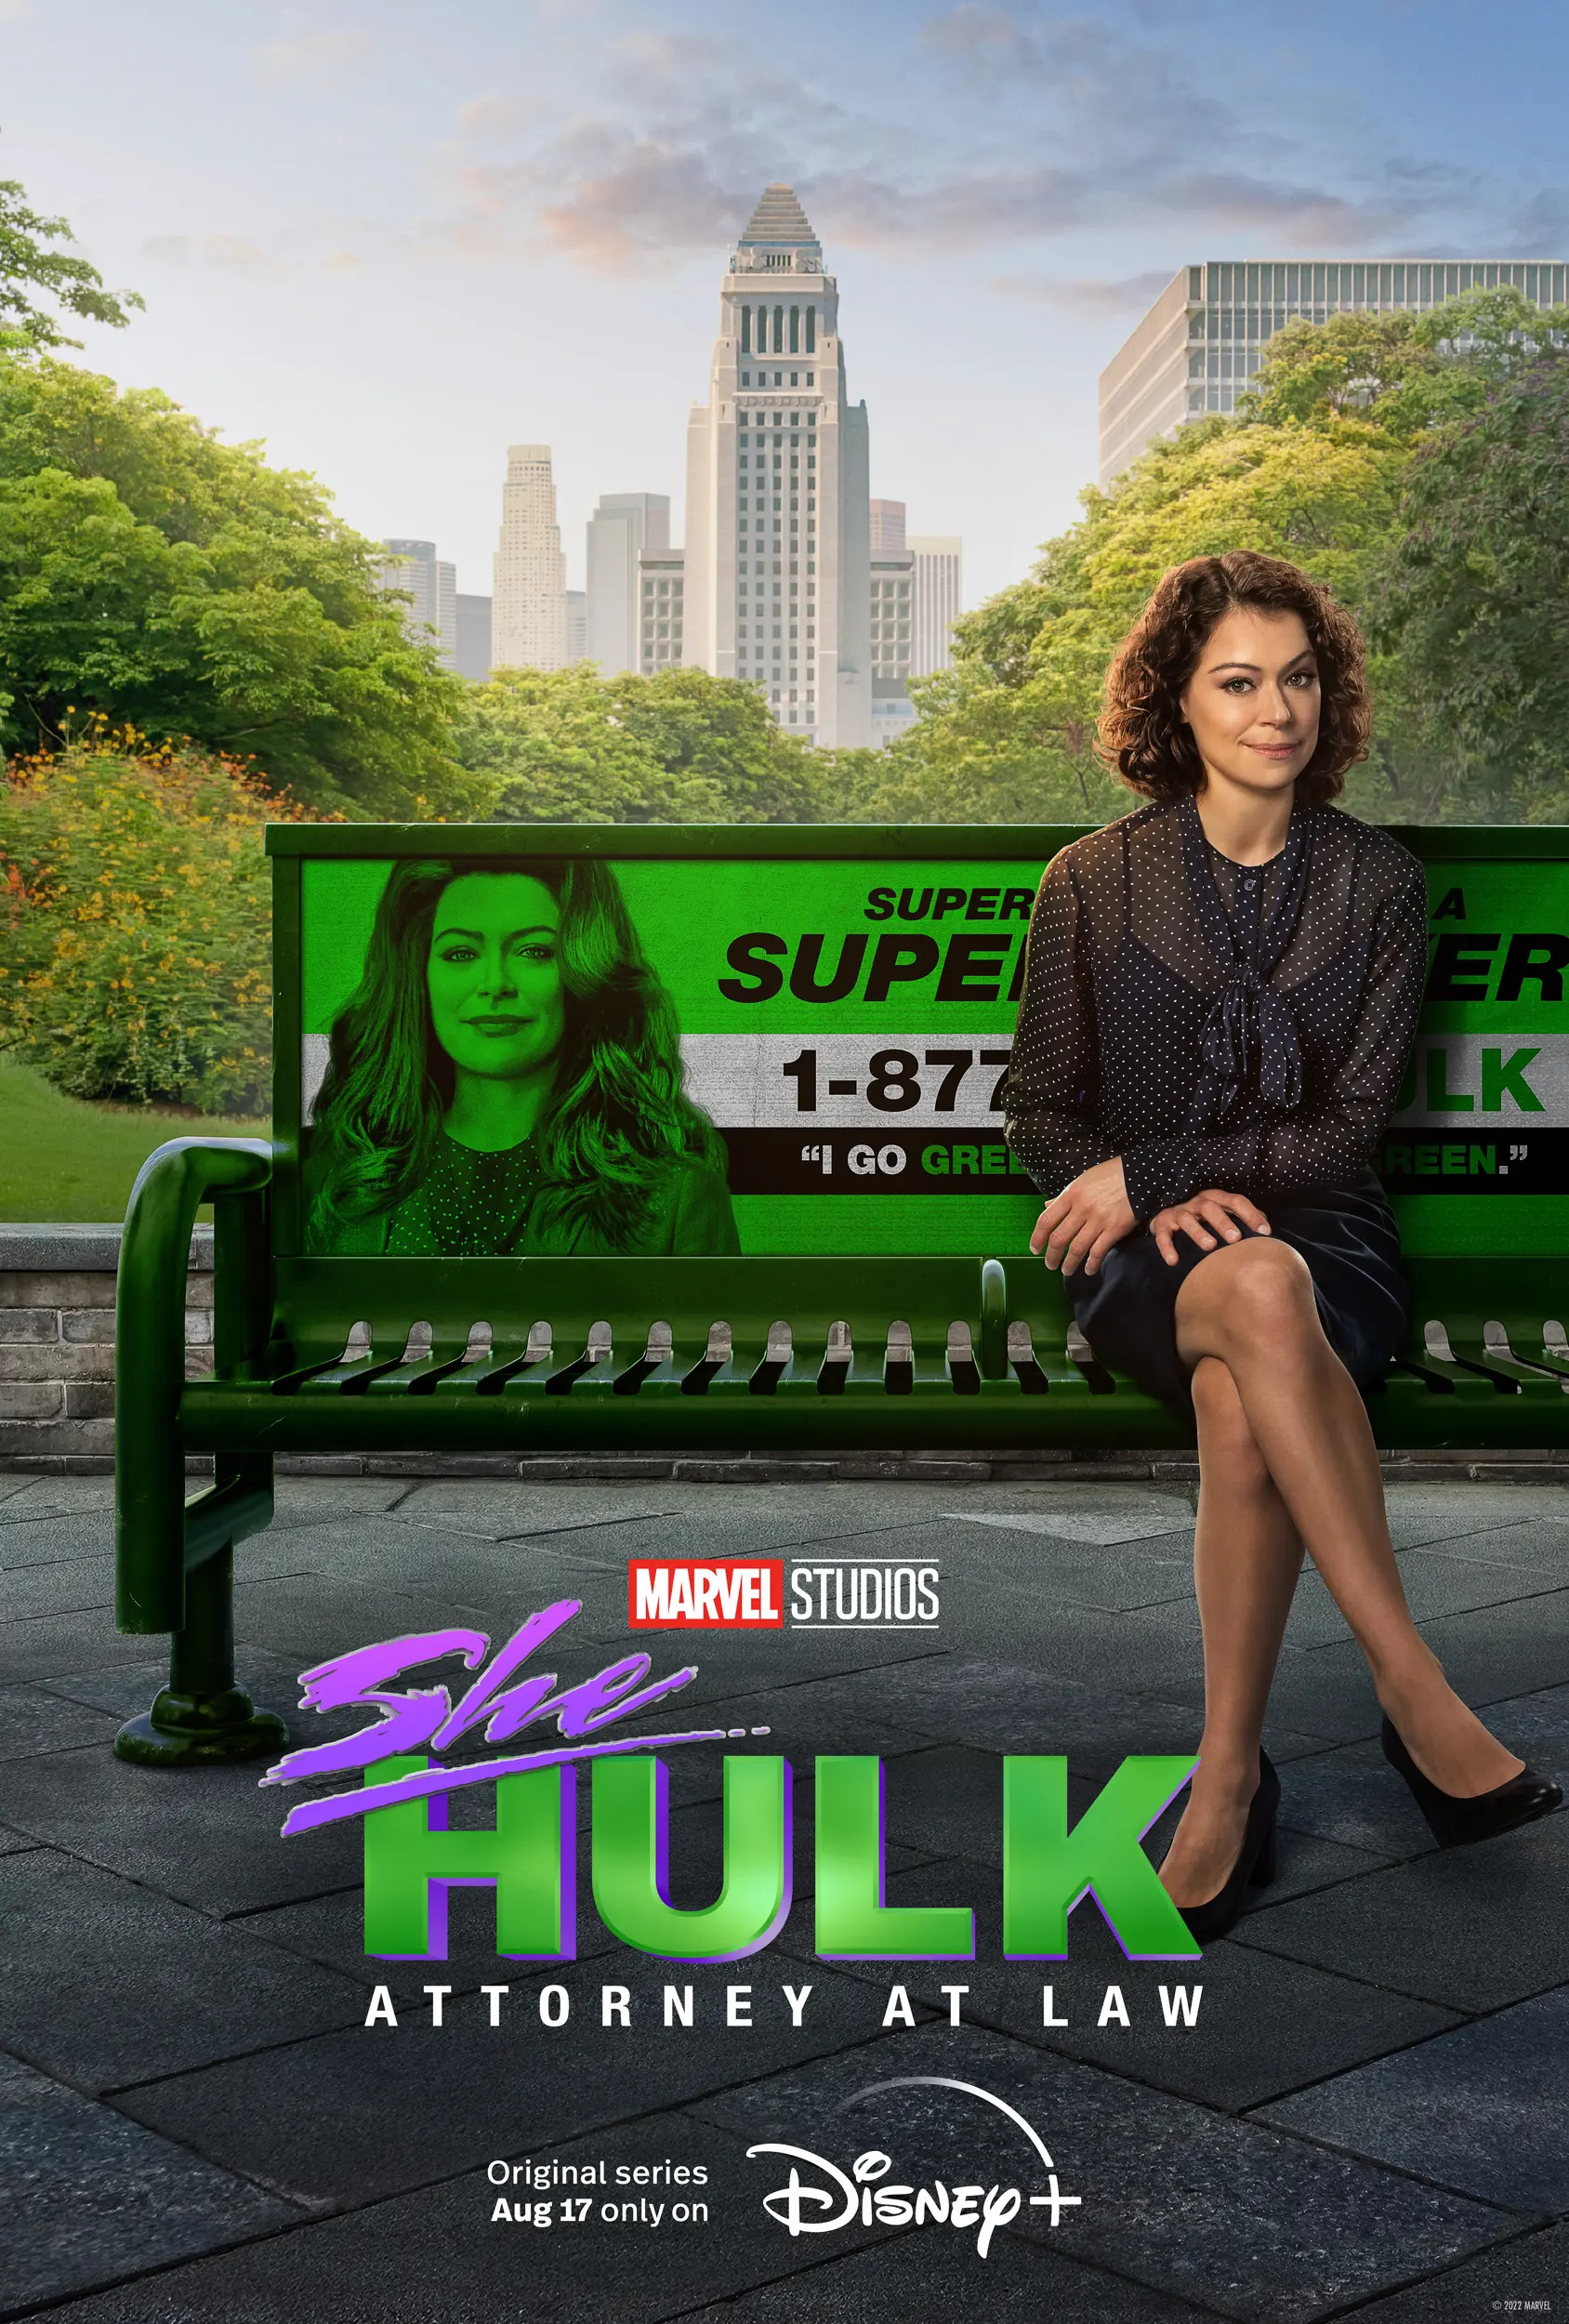 She-Hulk: Attorney at Law Case Files: Tatiana Maslany and Team She